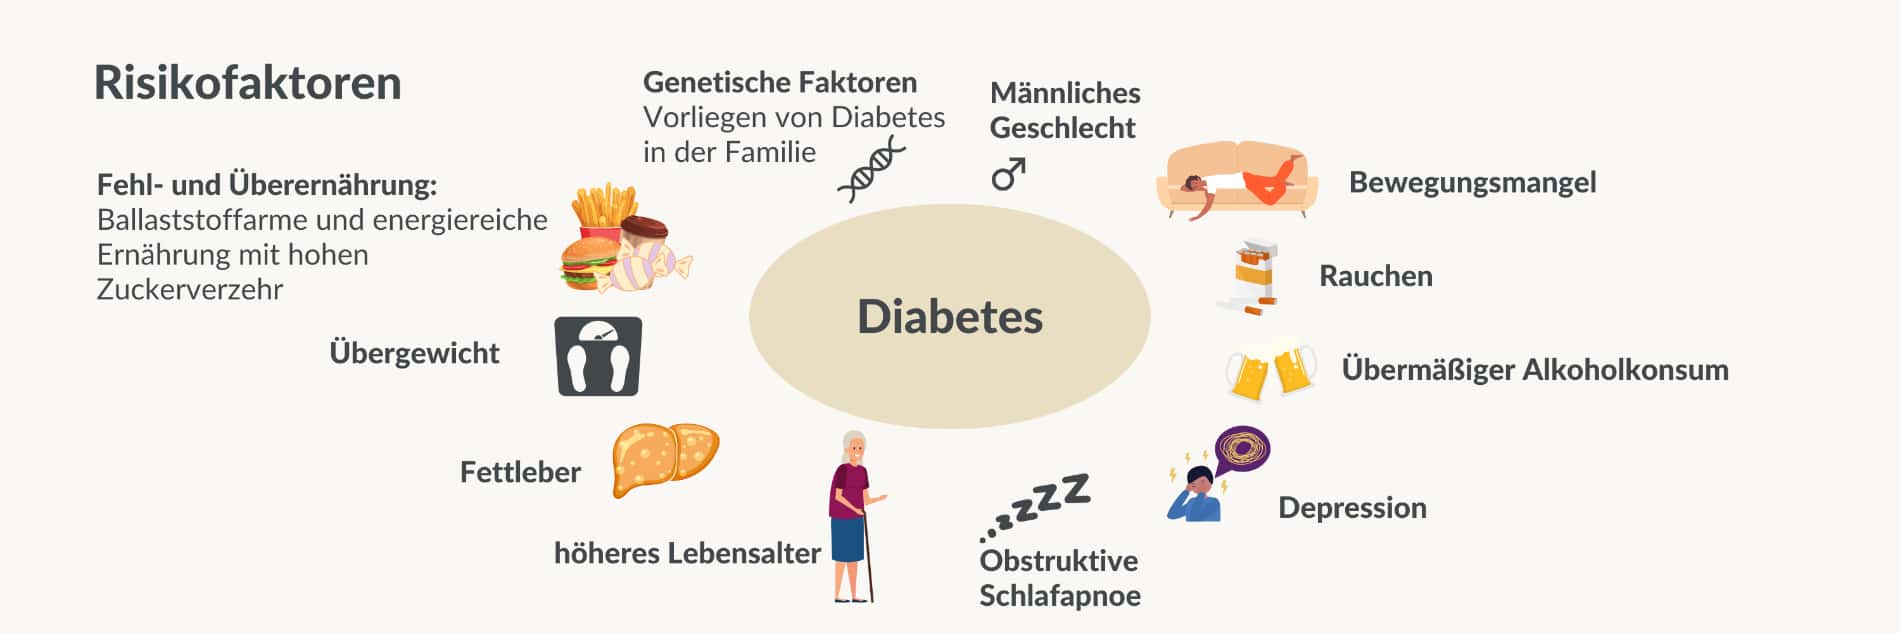 Diabetes Risikofaktoren